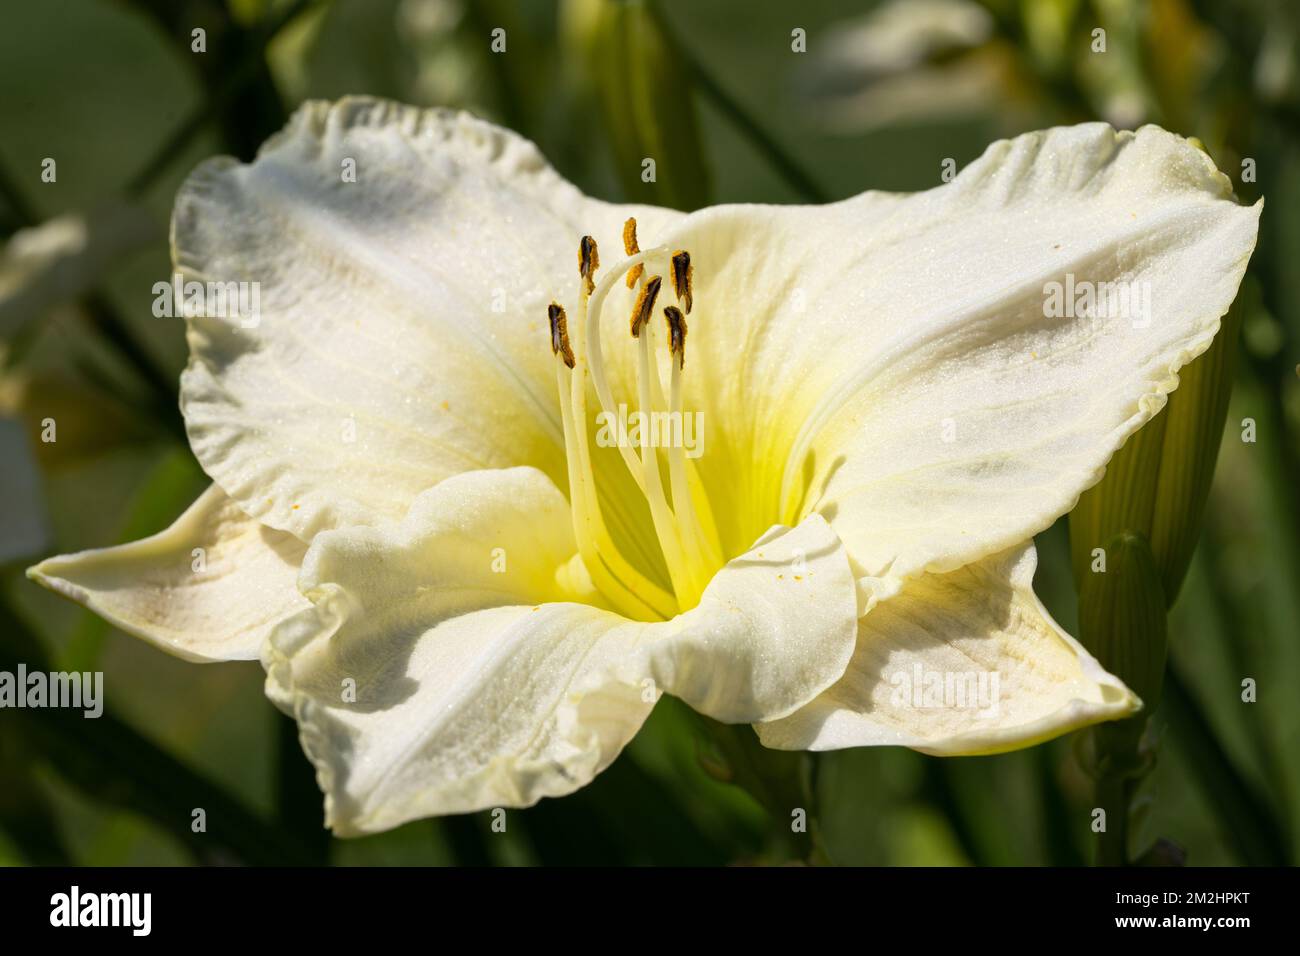 Giglio di giorno (Hemerocallis), in prossimità della testa di fiori Foto Stock